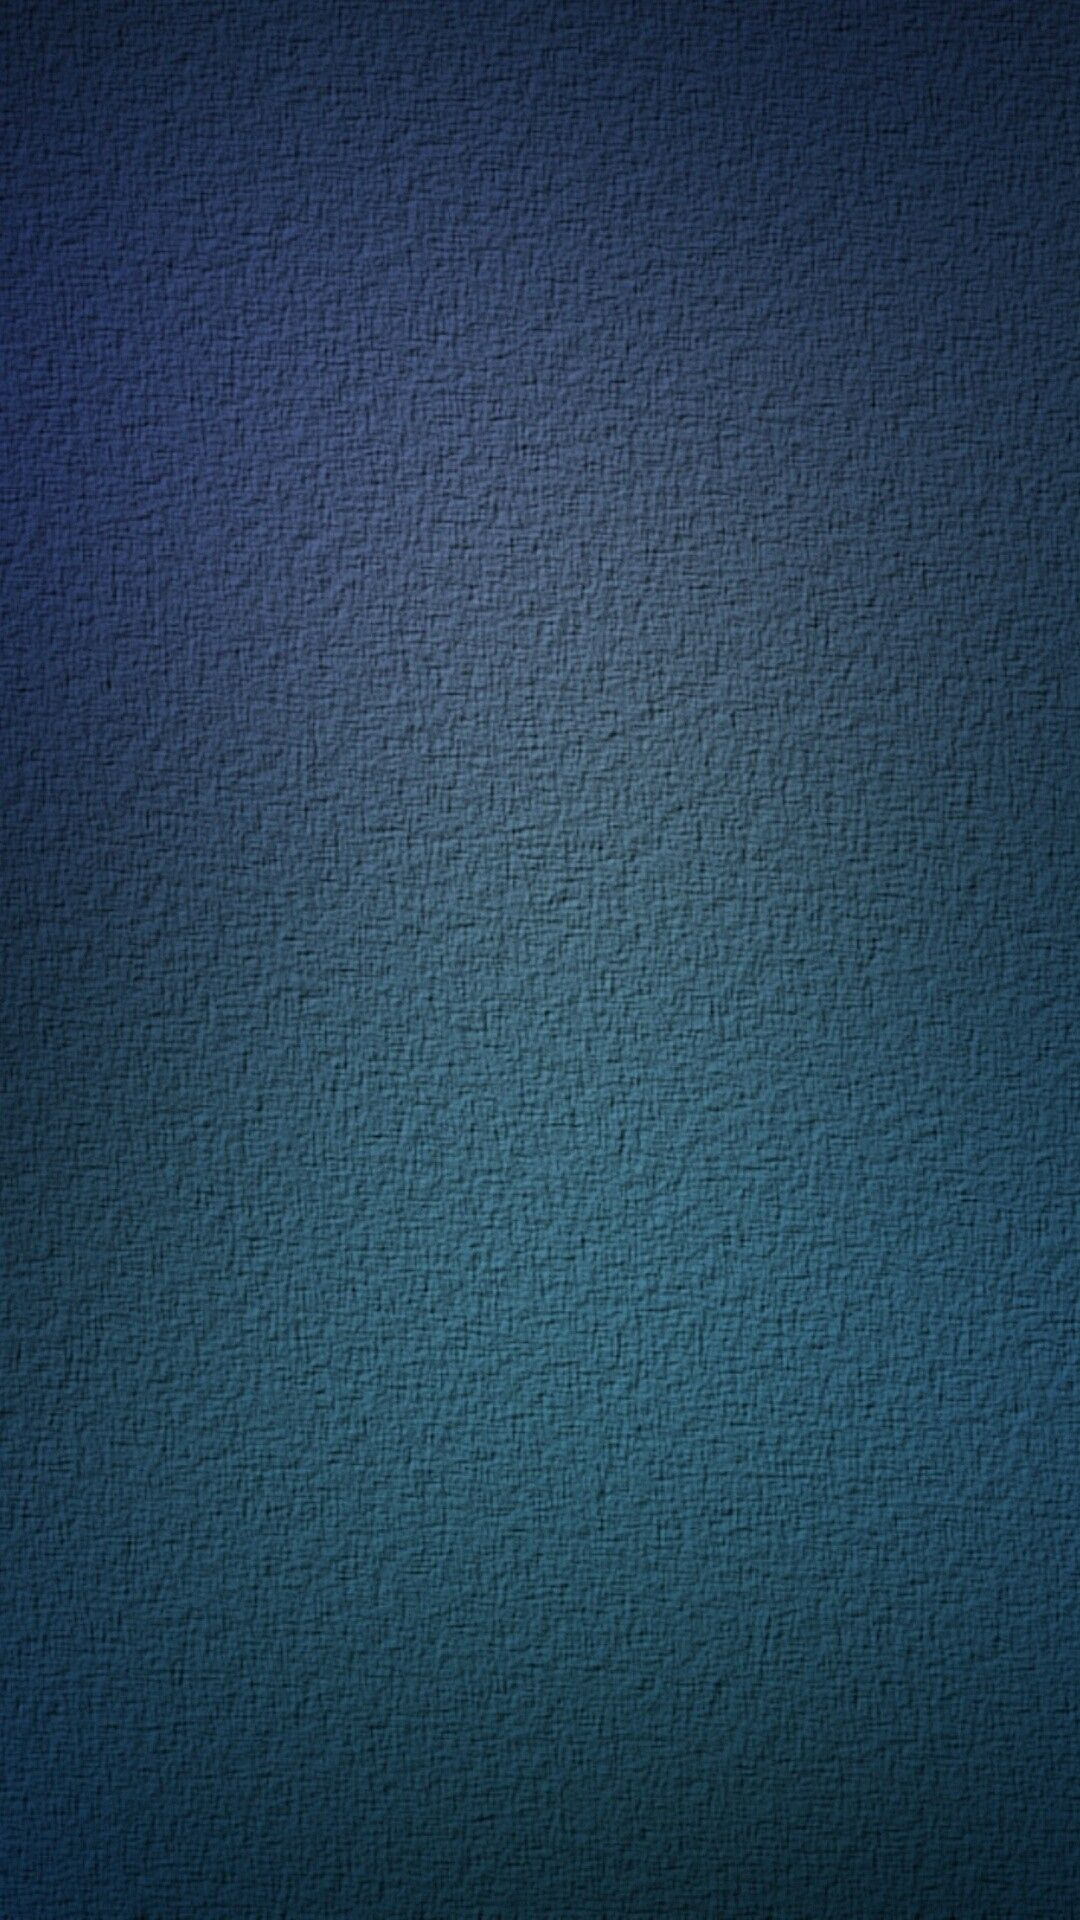 1080x1920 Blue textures wallpaper | Textured wallpaper, Android wallpaper blue, Phone wallpaper desig